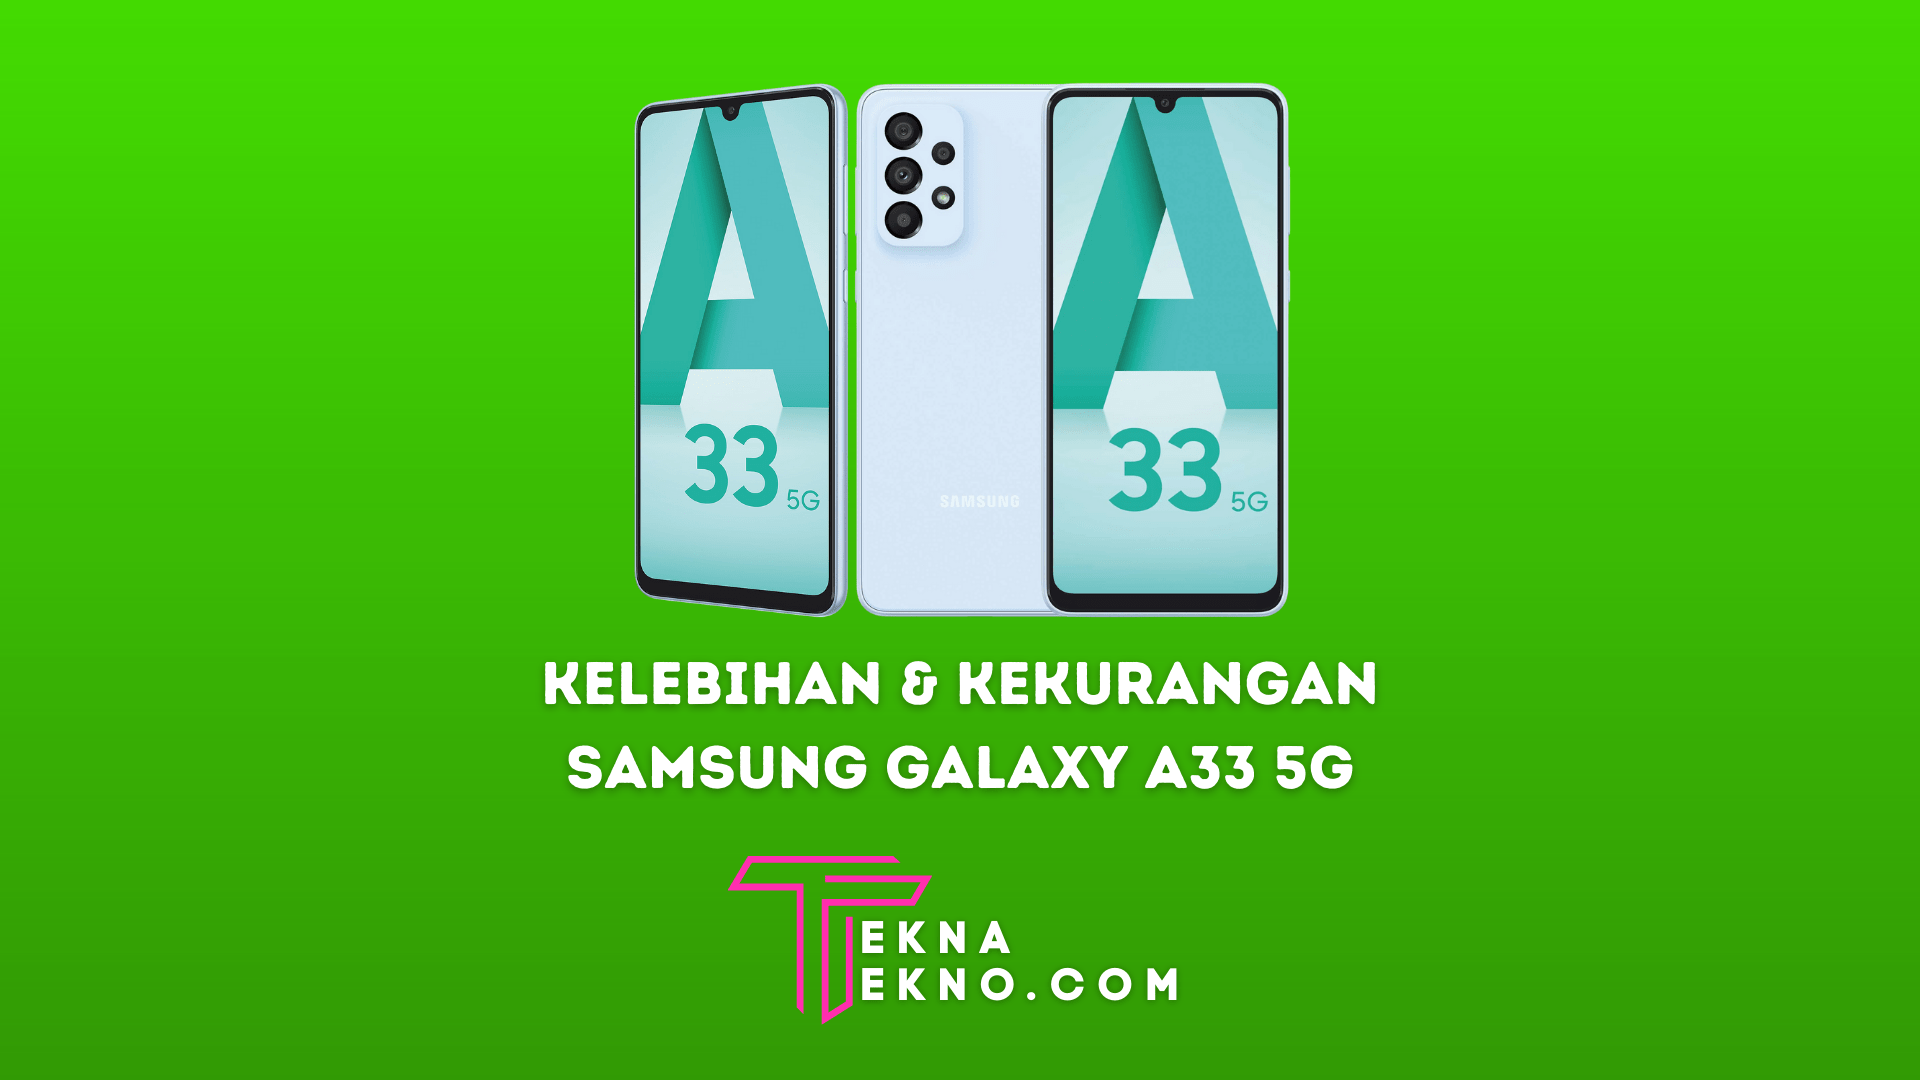 Samsung Galaxy A33 5G: Intip Kelebihan dan Kekurangannya